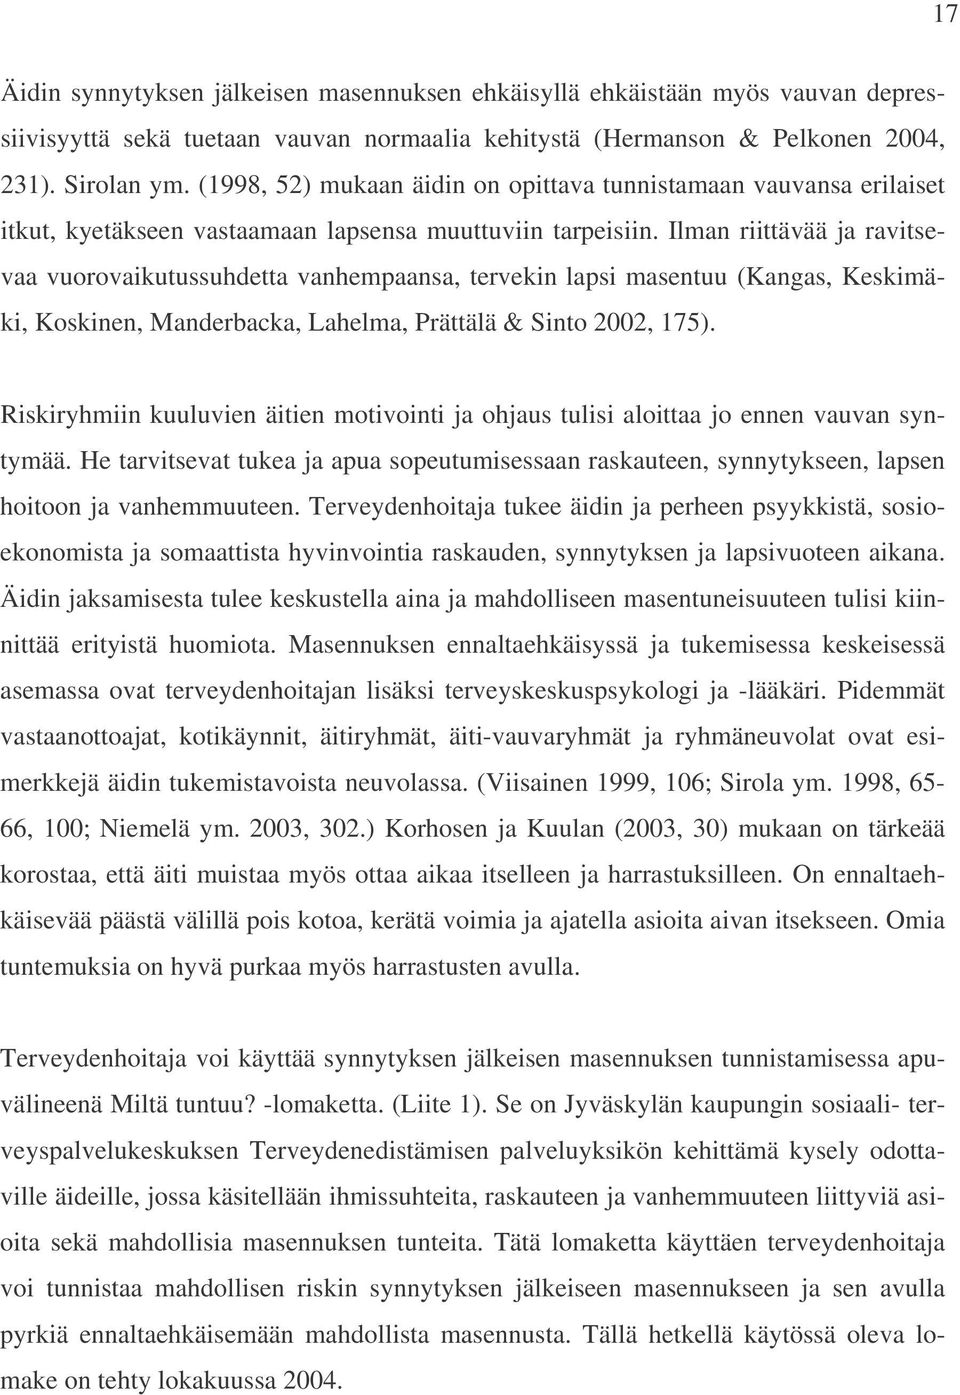 Ilman riittävää ja ravitsevaa vuorovaikutussuhdetta vanhempaansa, tervekin lapsi masentuu (Kangas, Keskimäki, Koskinen, Manderbacka, Lahelma, Prättälä & Sinto 2002, 175).